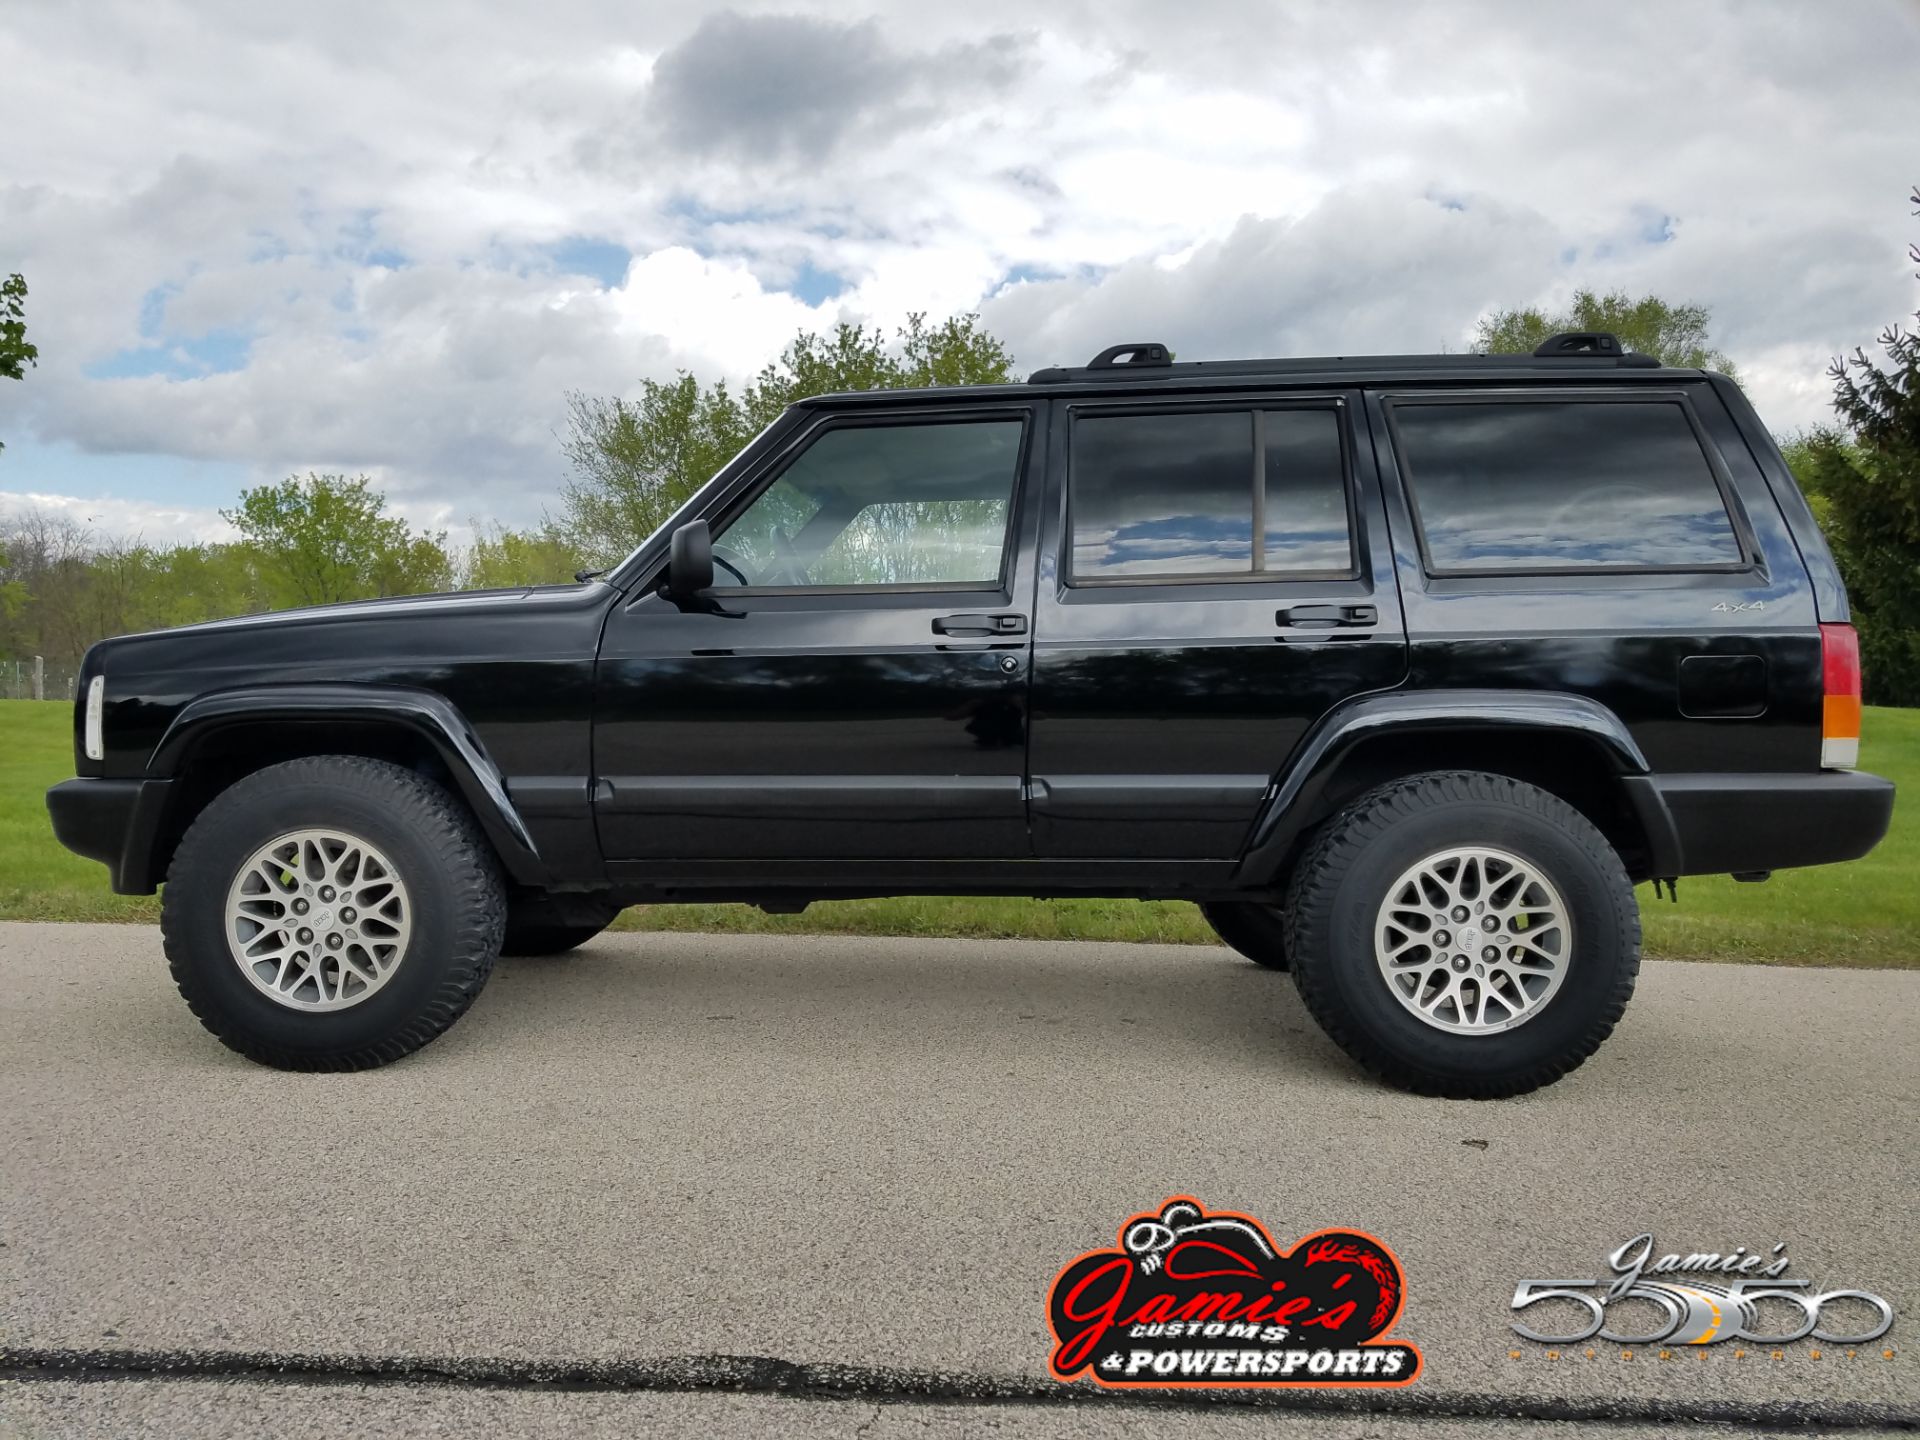 2000 Jeep® Cherokee Sport in Big Bend, Wisconsin - Photo 1